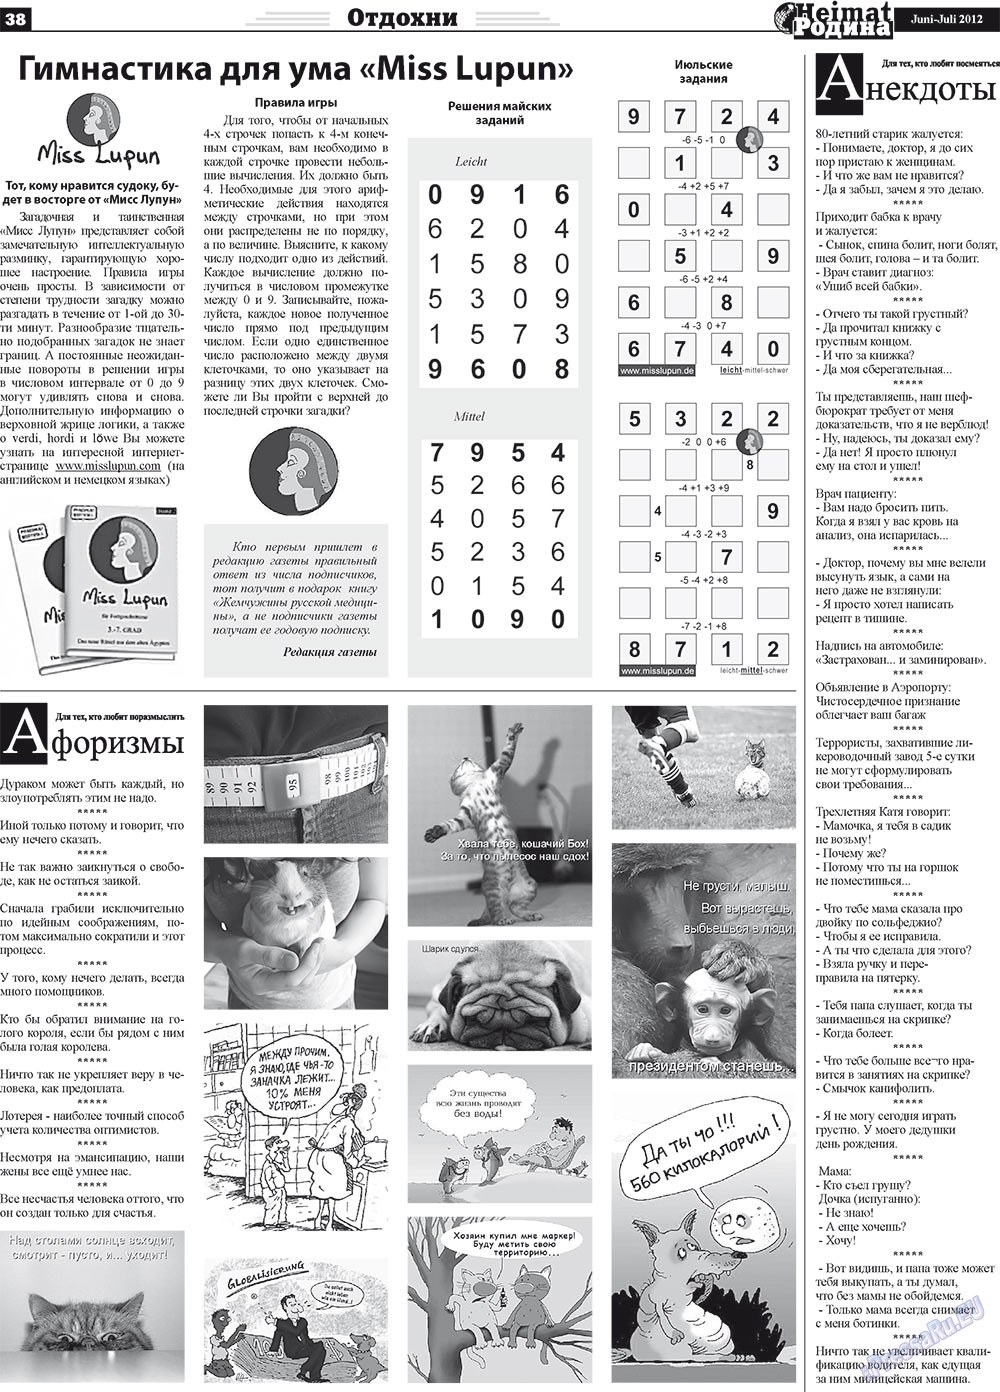 Heimat-Родина (газета). 2012 год, номер 5, стр. 38